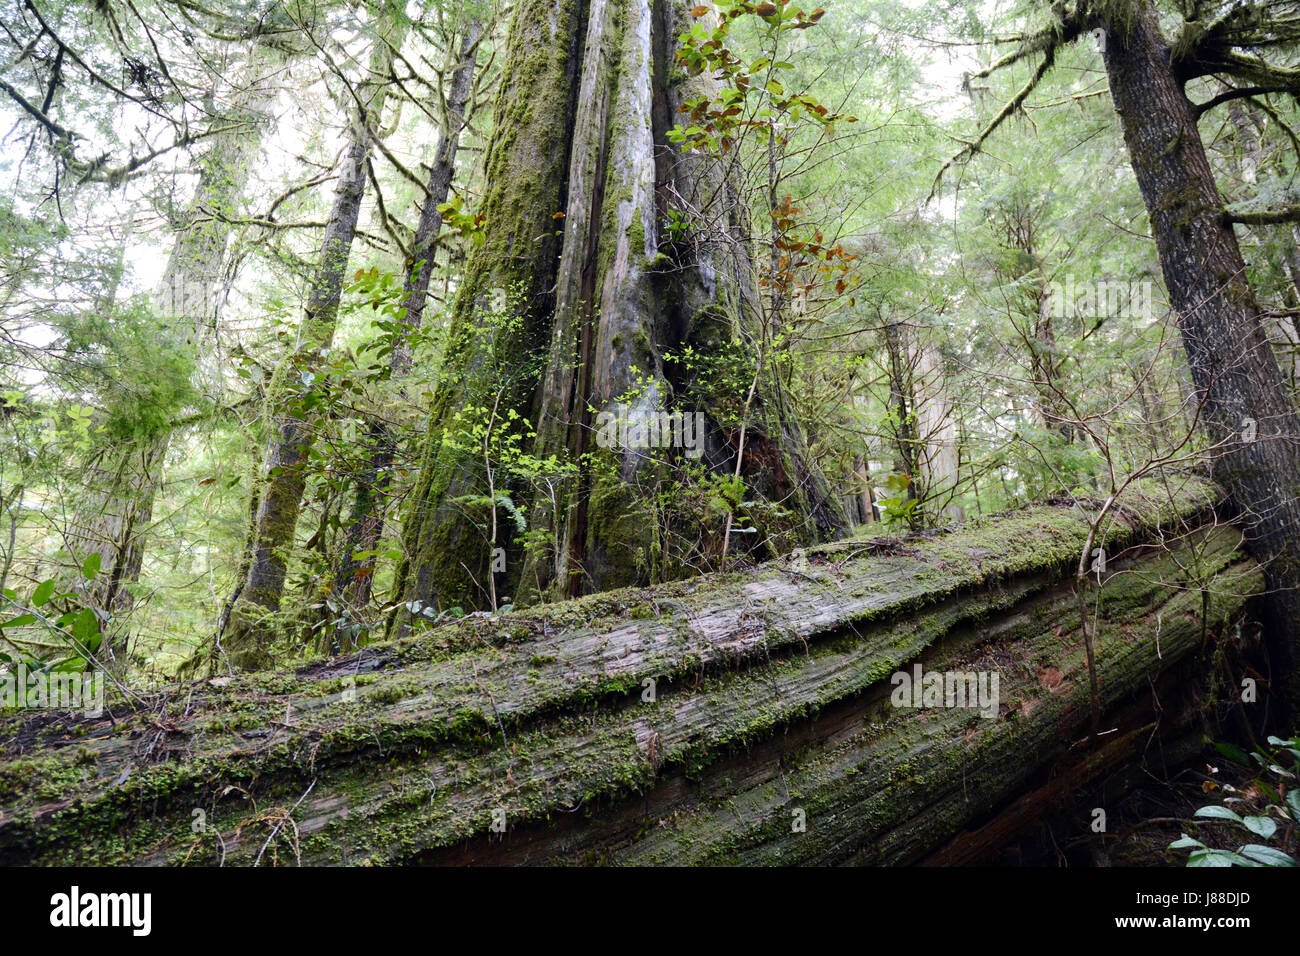 Vieux moussu le cèdre rouge de l'arbre le sentier surplombe un log dans une ancienne forêt tropicale sur l'île de Vancouver, Colombie-Britannique, Canada Banque D'Images